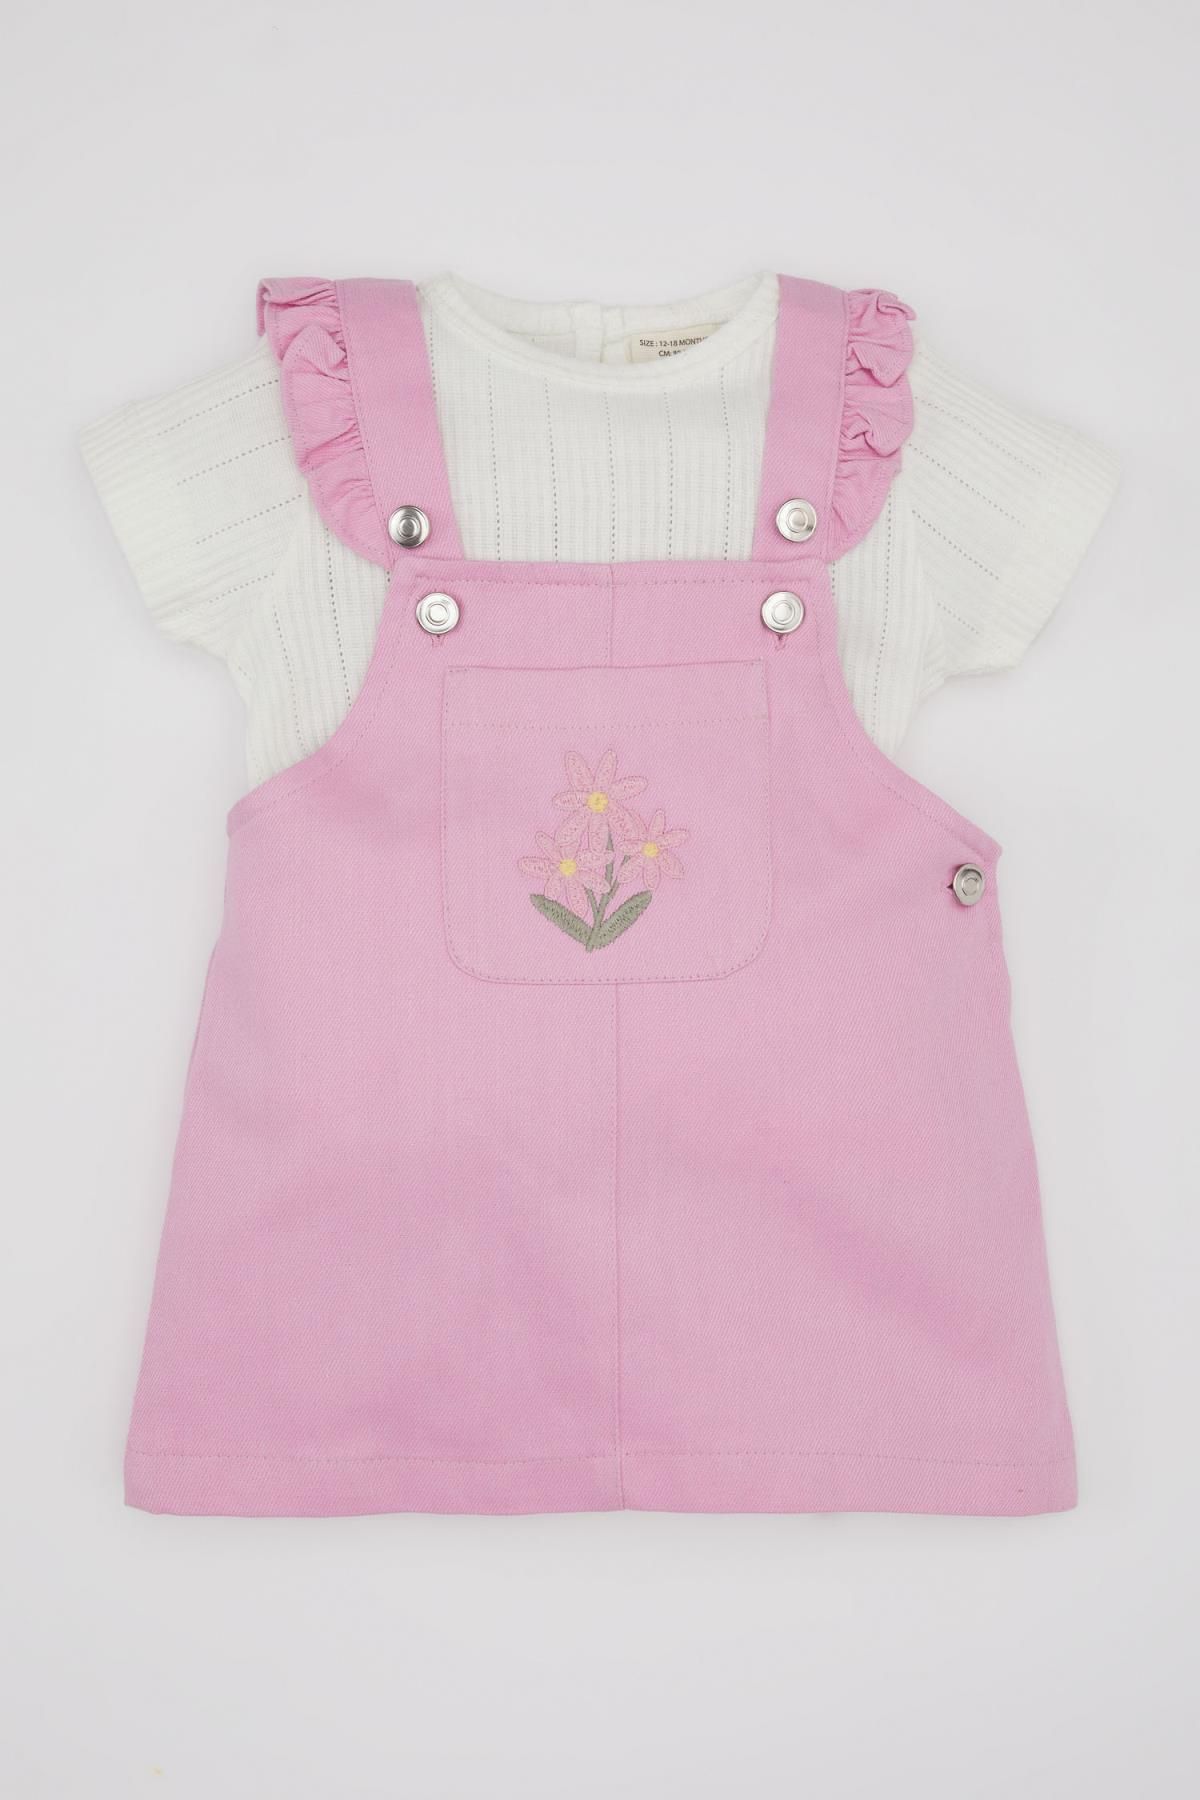 Defacto Kız Bebek Kısa Kollu Tişört Çiçekli Gabardin Salopet Elbise 2li Takım C2142A524SM